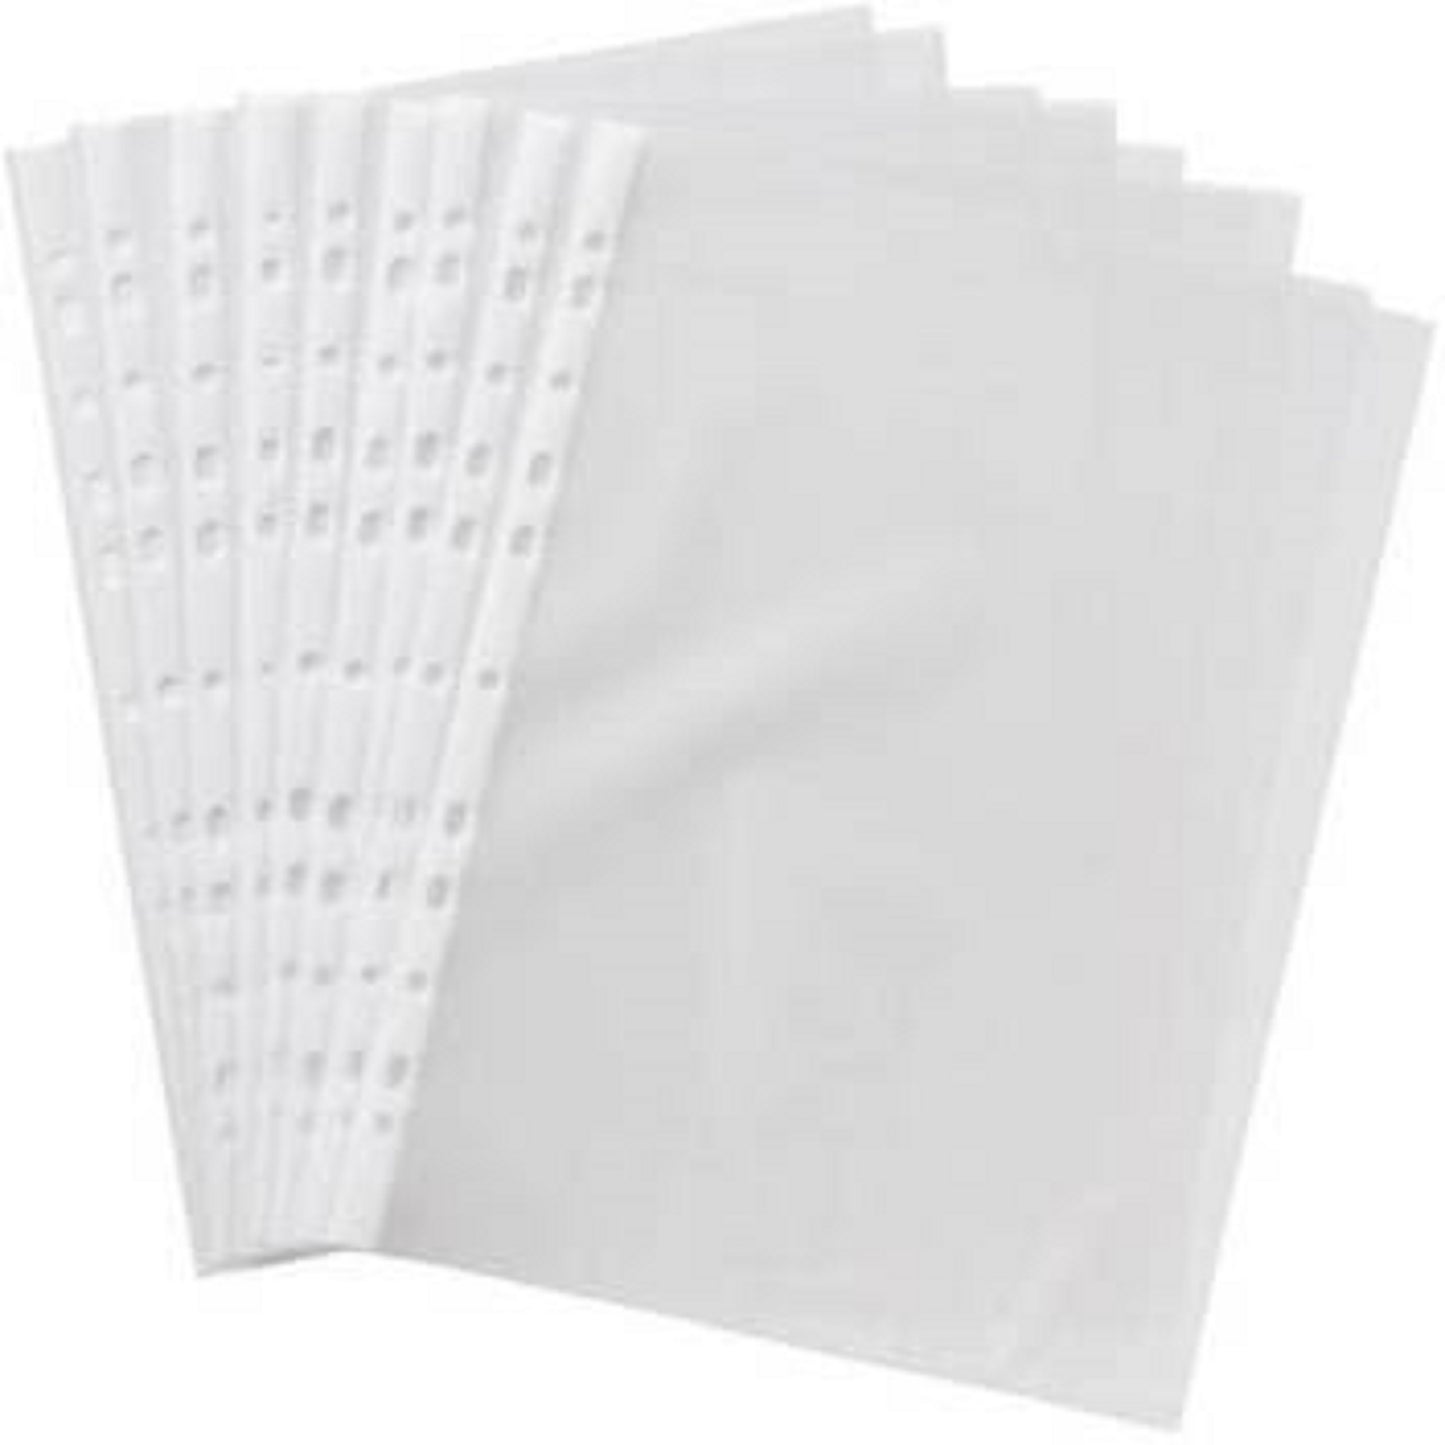 Digismart A4 Punched Pocket, 25 Pages/Pack Sheet Protector Binder Pocket Paper File Letter Sheet Protector Binder Sleeves, Clear Sheet Protector Transparent Document Pocket Folder Wallets Sleeves(Transparent)